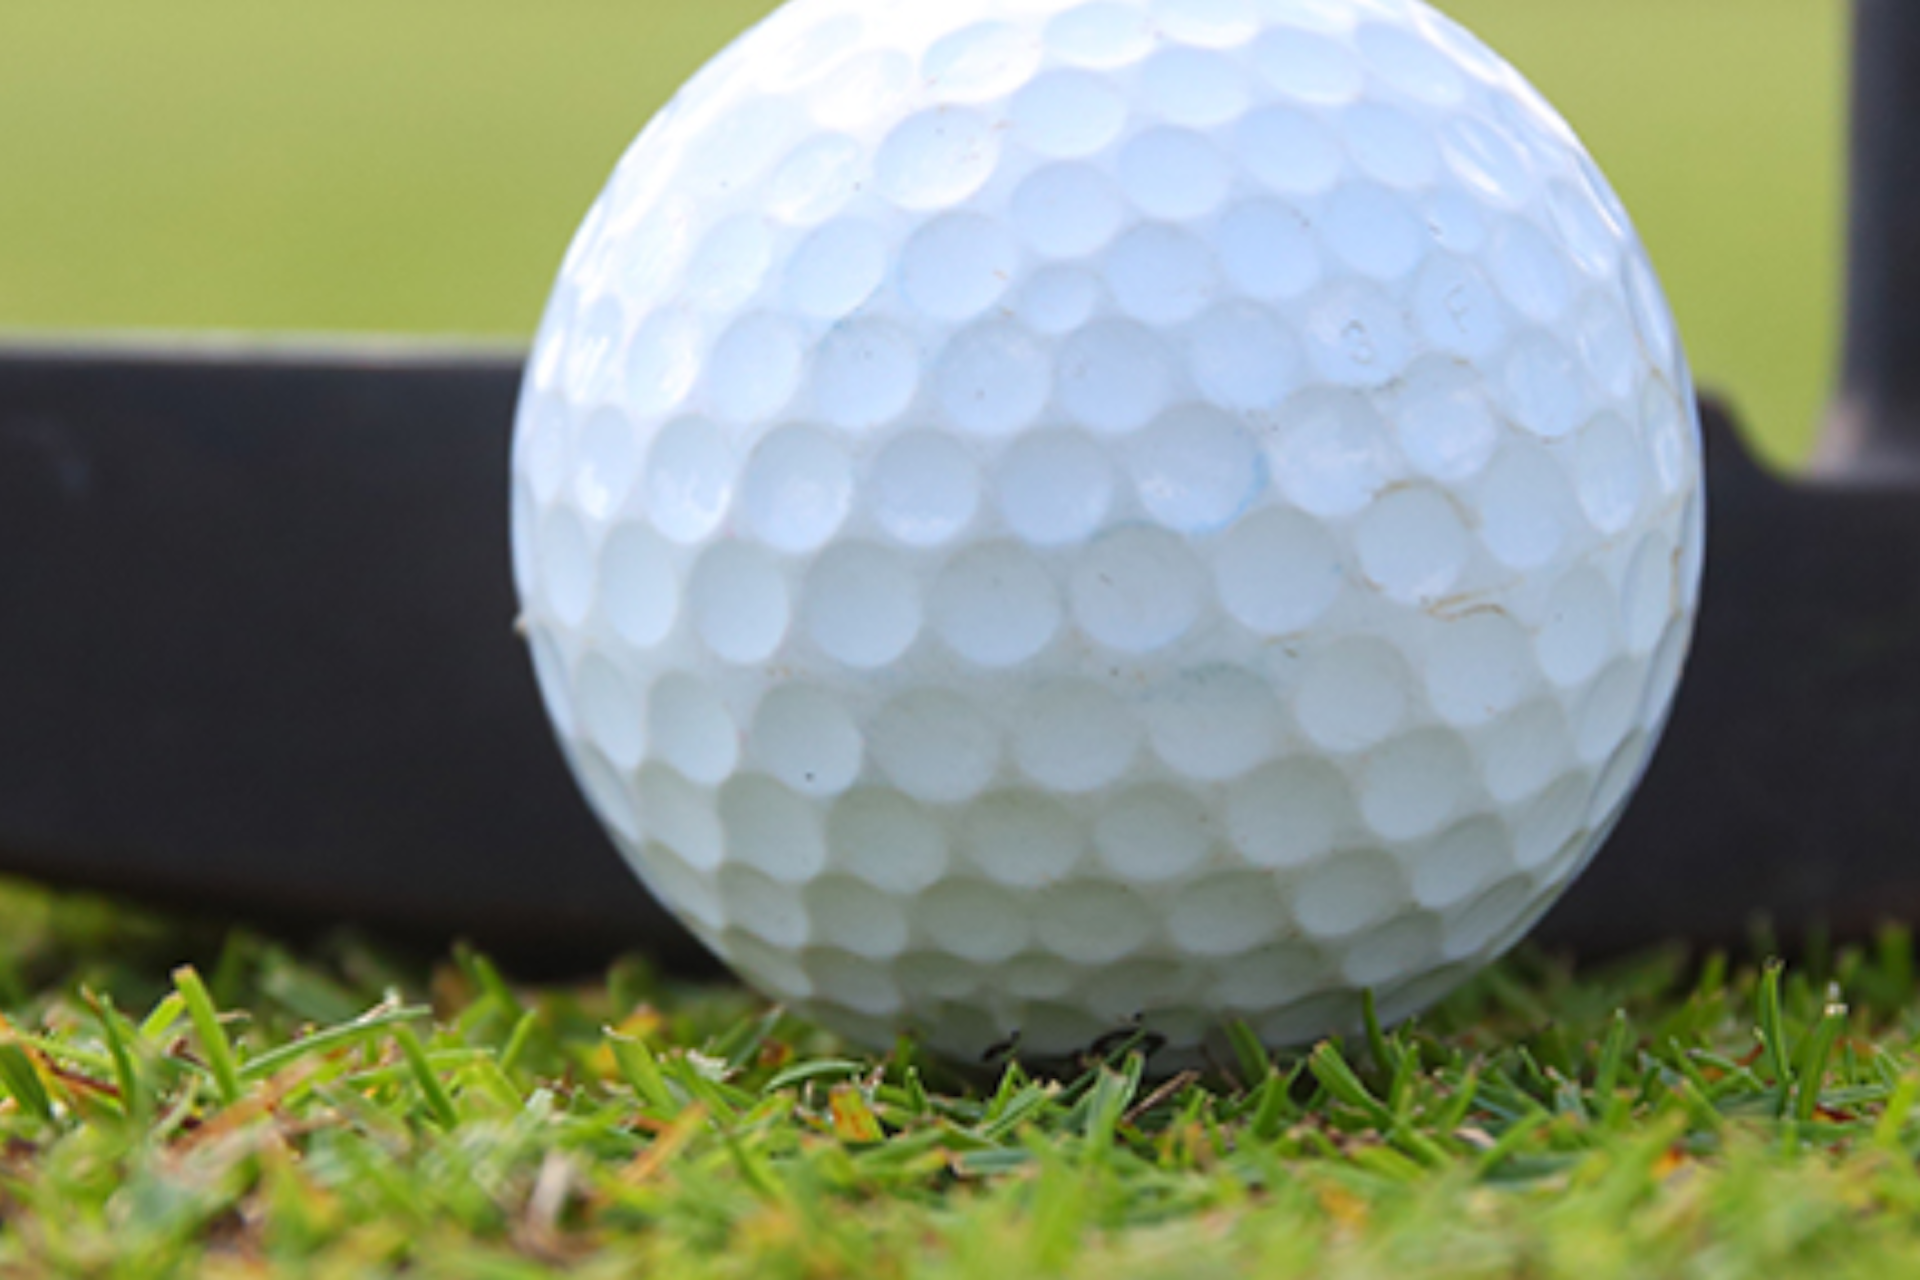 A golf ball on grass.